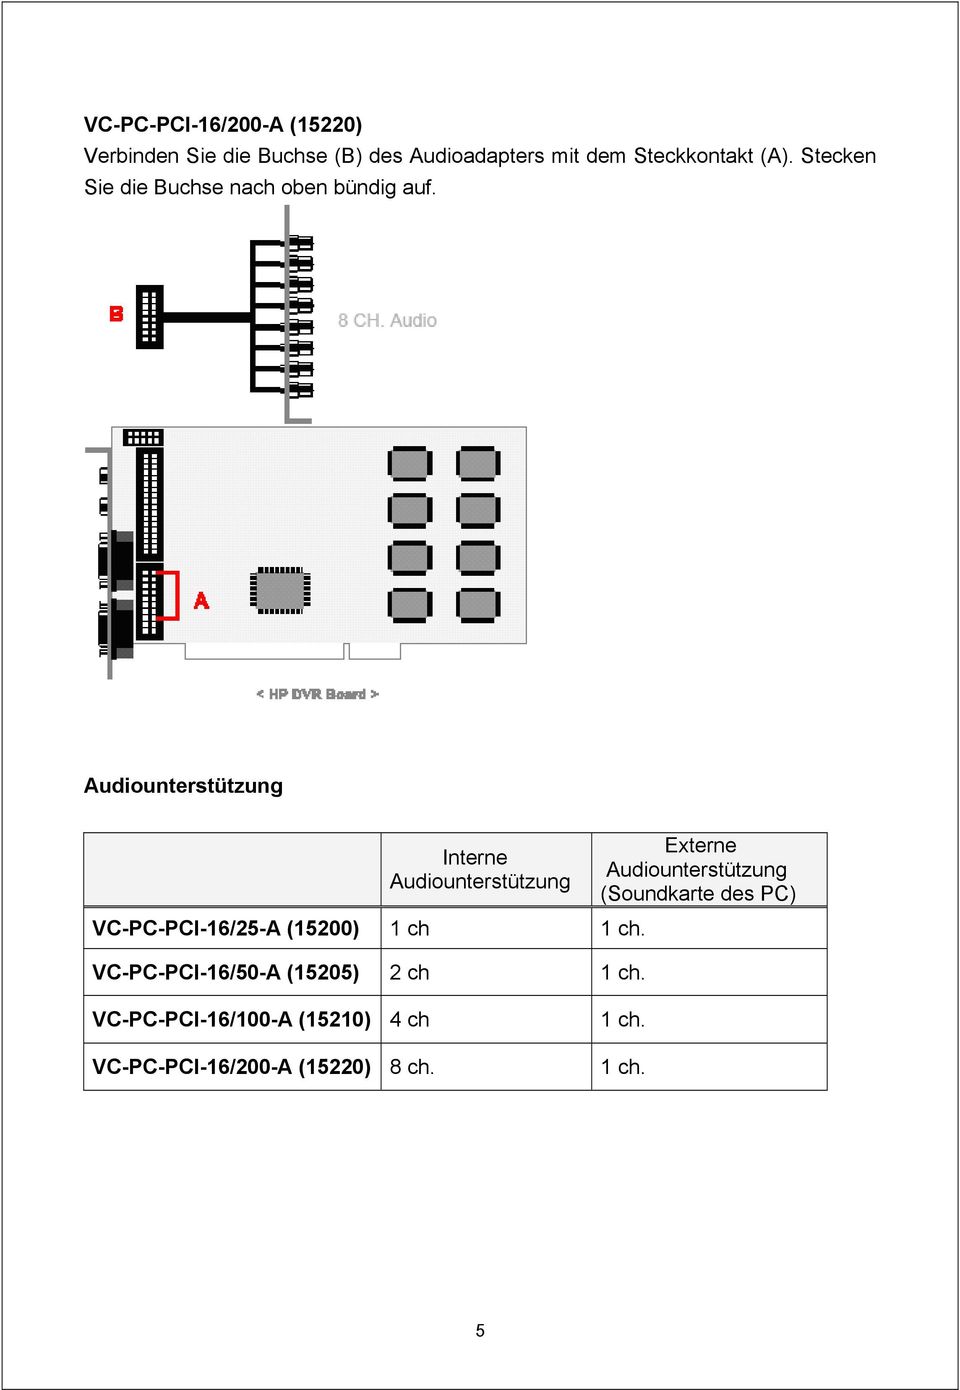 Audiounterstützung Interne Audiounterstützung VC-PC-PCI-16/25-A (15200) 1 ch 1 ch.